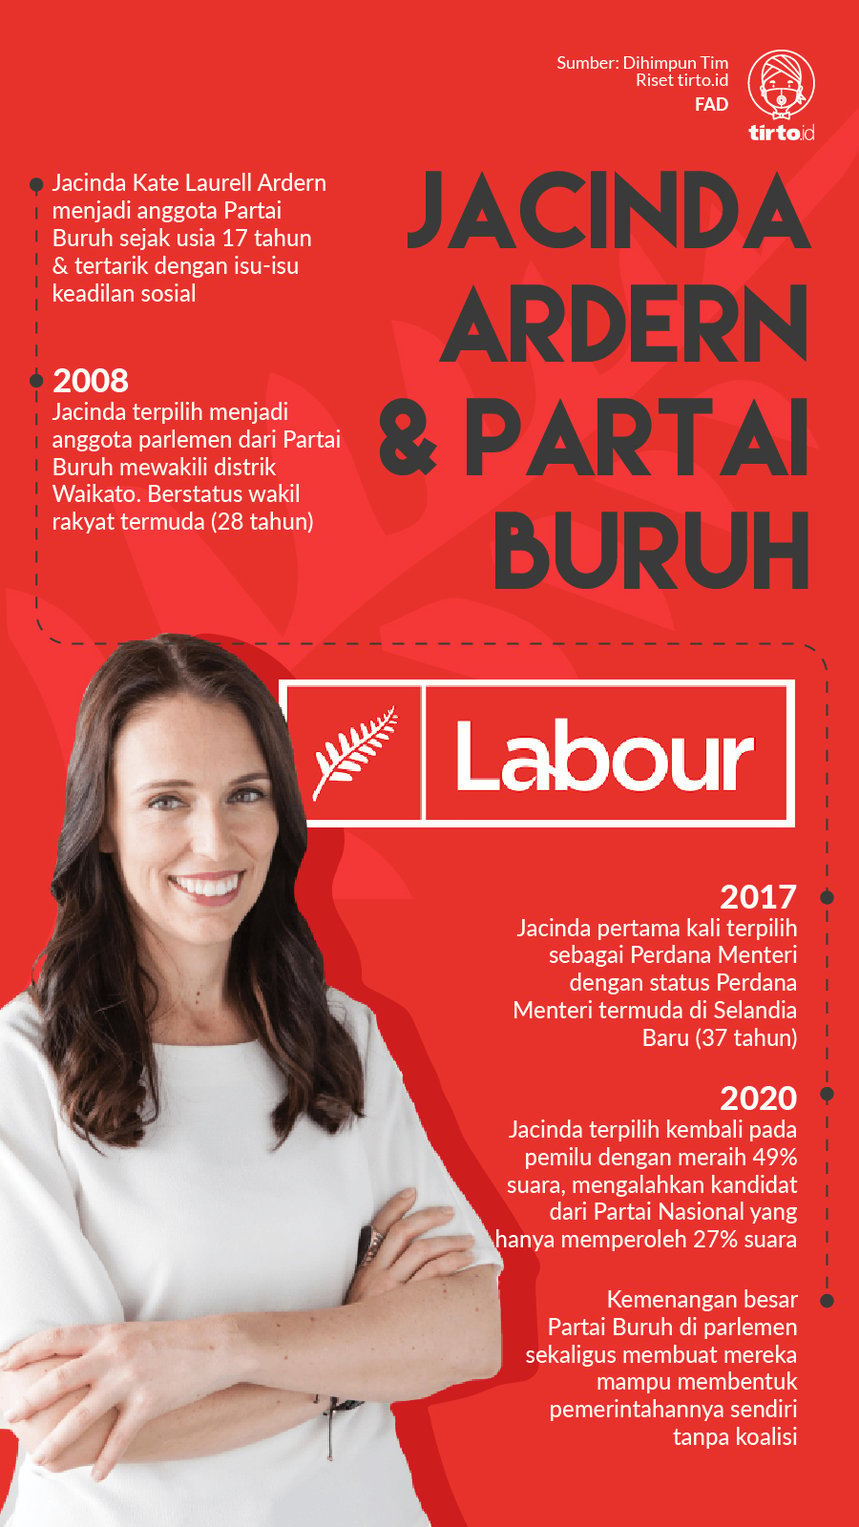 Infografik Jacinda Ardern dan Partai Buruh